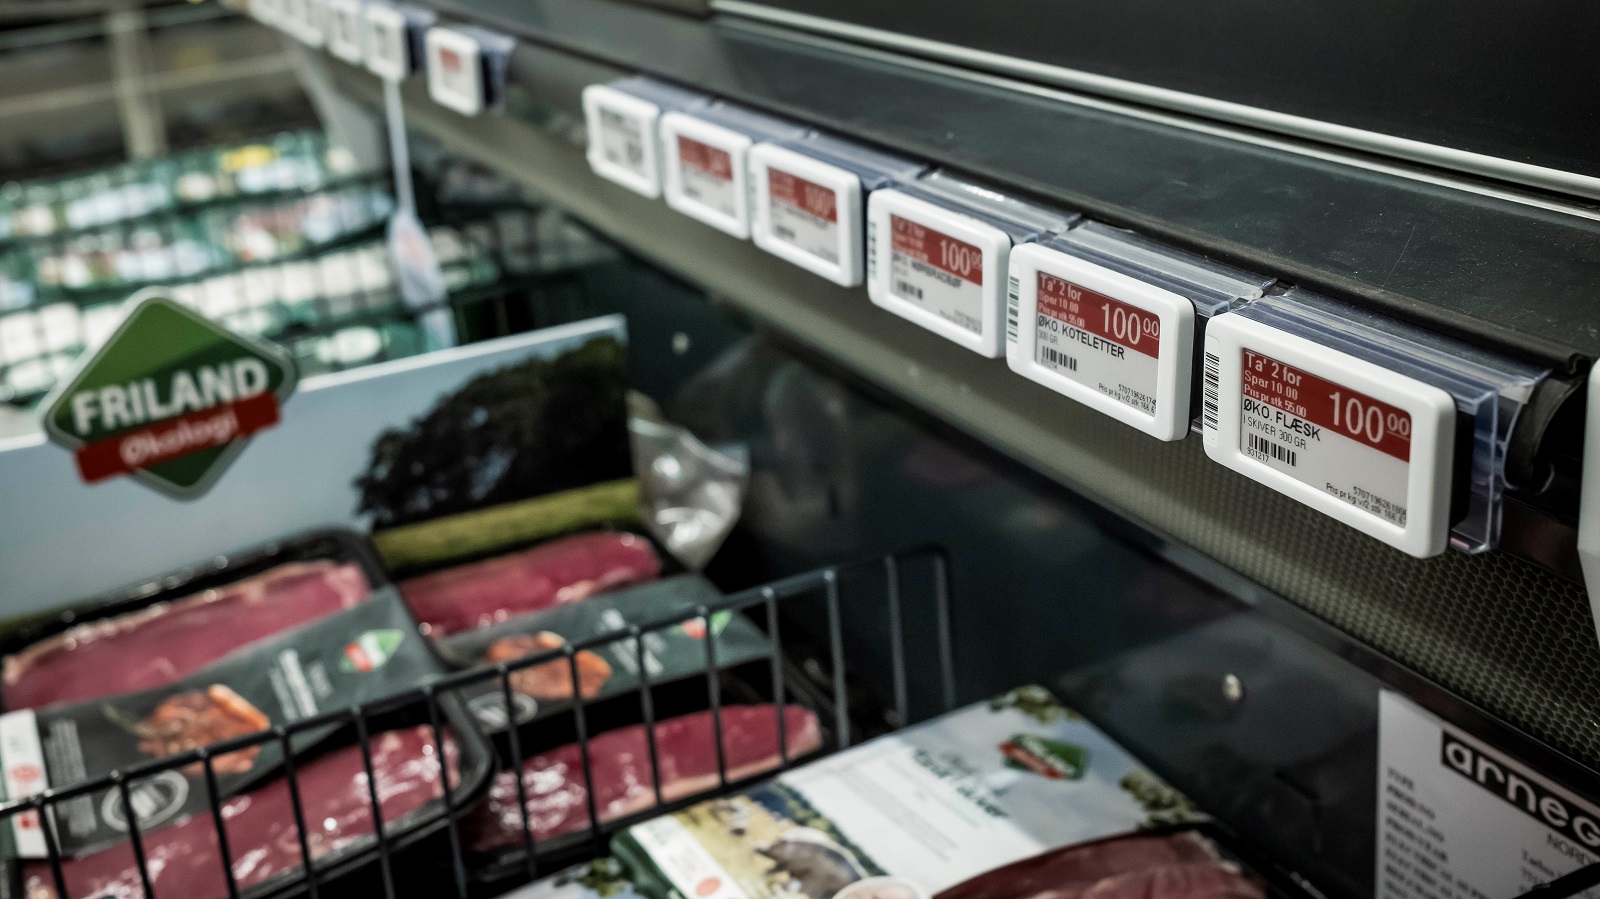 Kød fra Friland på tilbuds i køledisk i Meny.